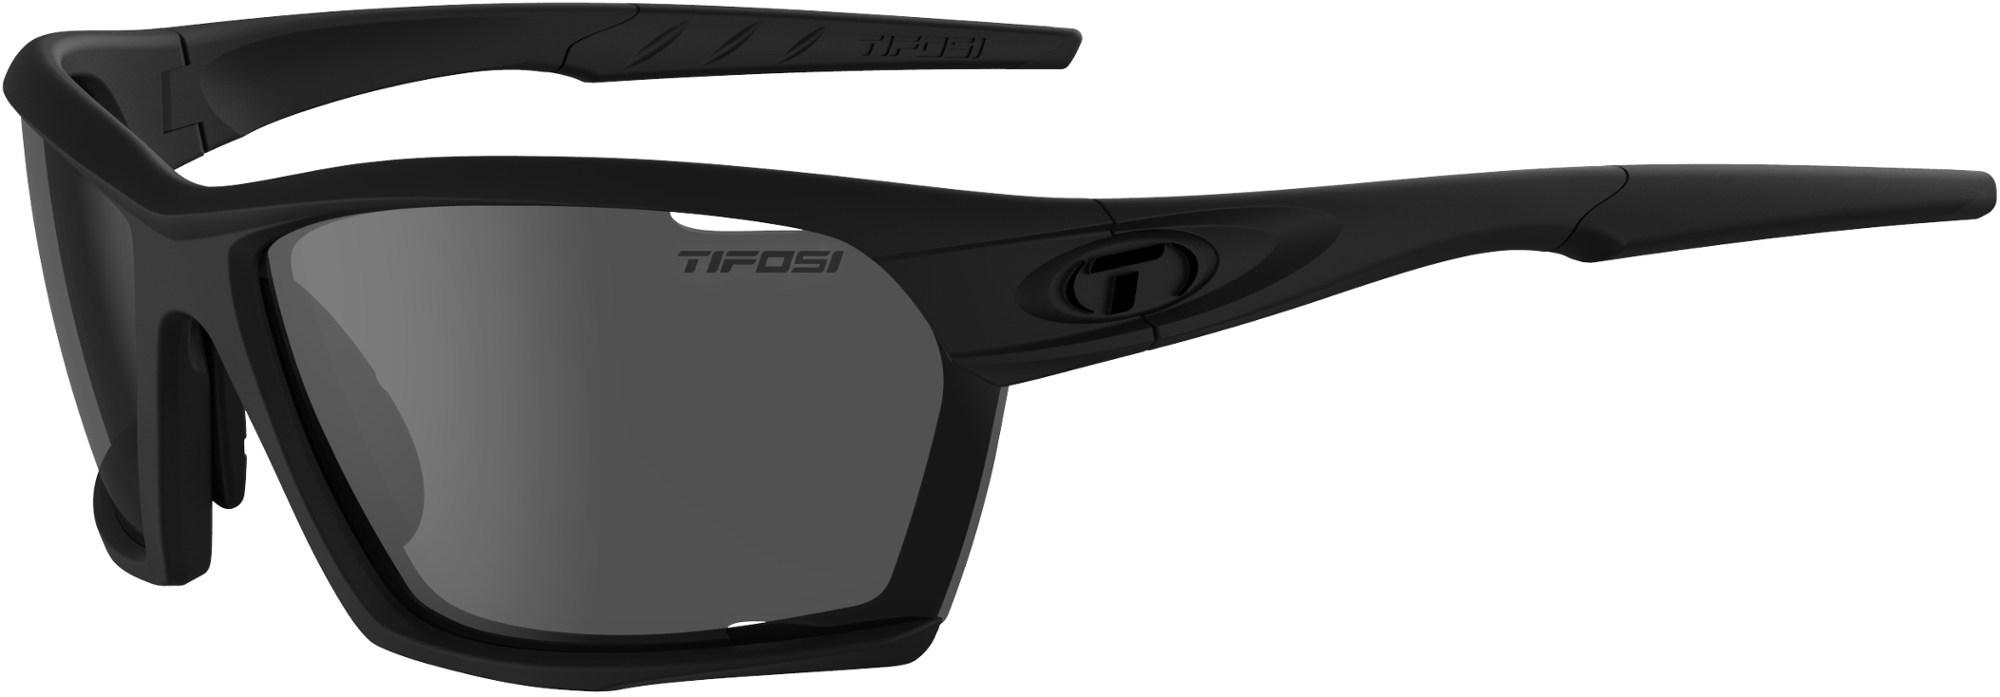 цена Поляризованные солнцезащитные очки Kilo Tifosi, черный